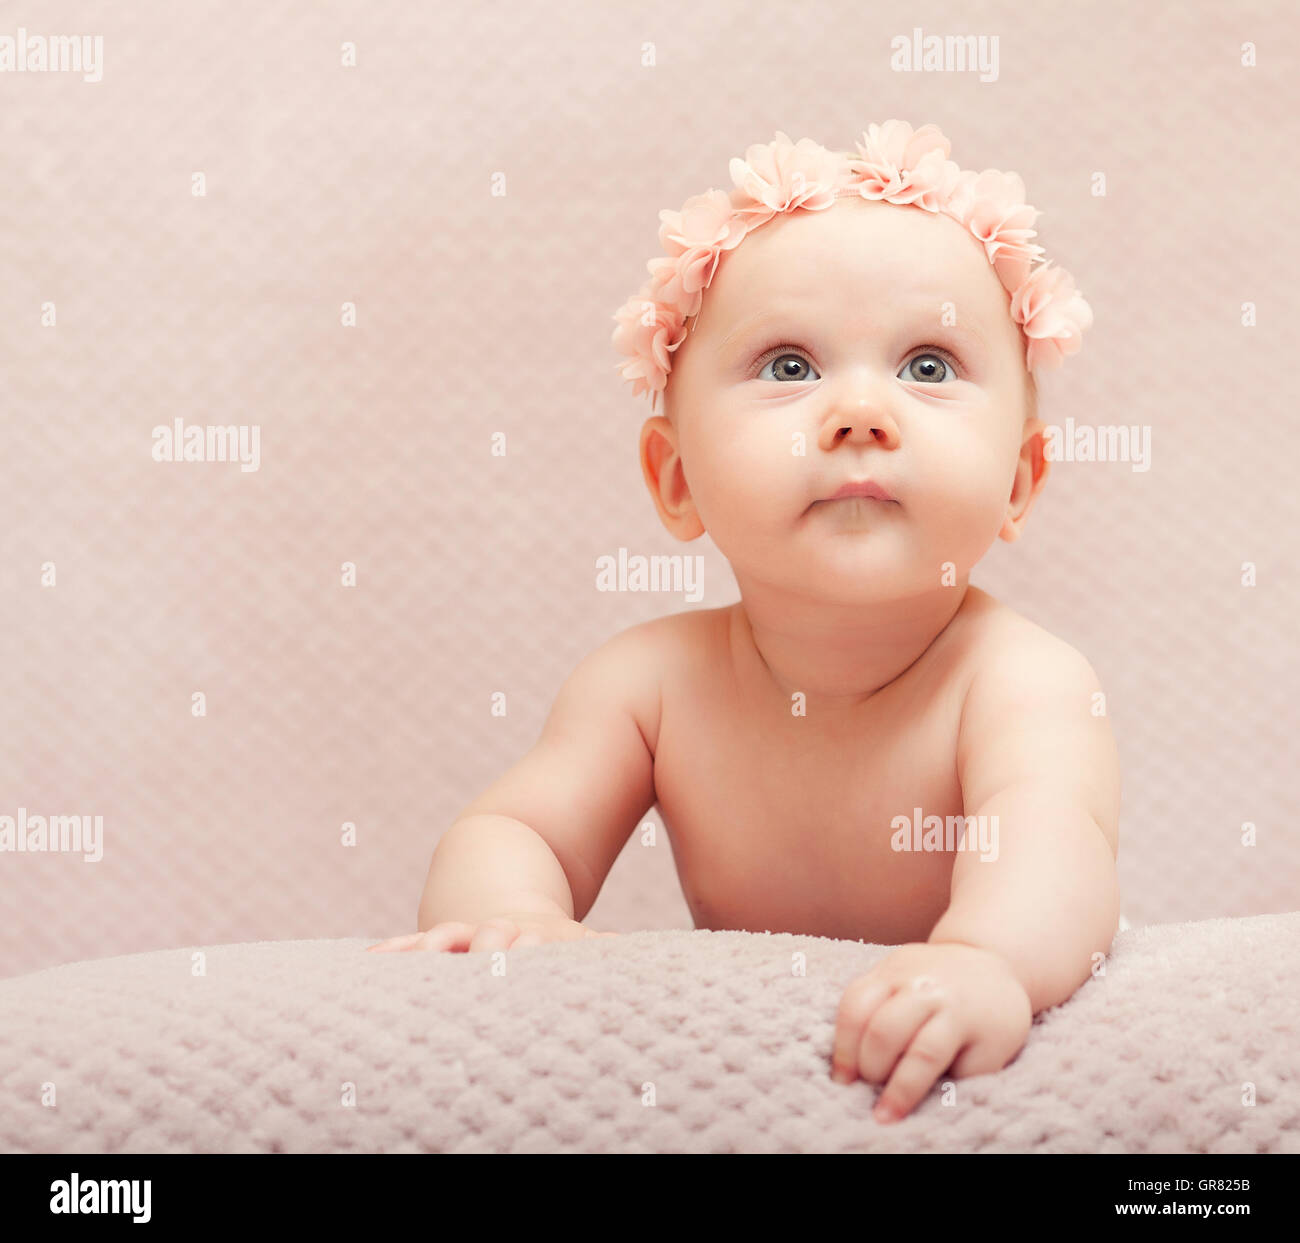 Porträt Neugeborenen Blume rosa nettes Kind Kind entzückende kleine weibliche Wollmütze FineArt-Baby femininen Kostüm Säugling Unschuld ca Stockfoto